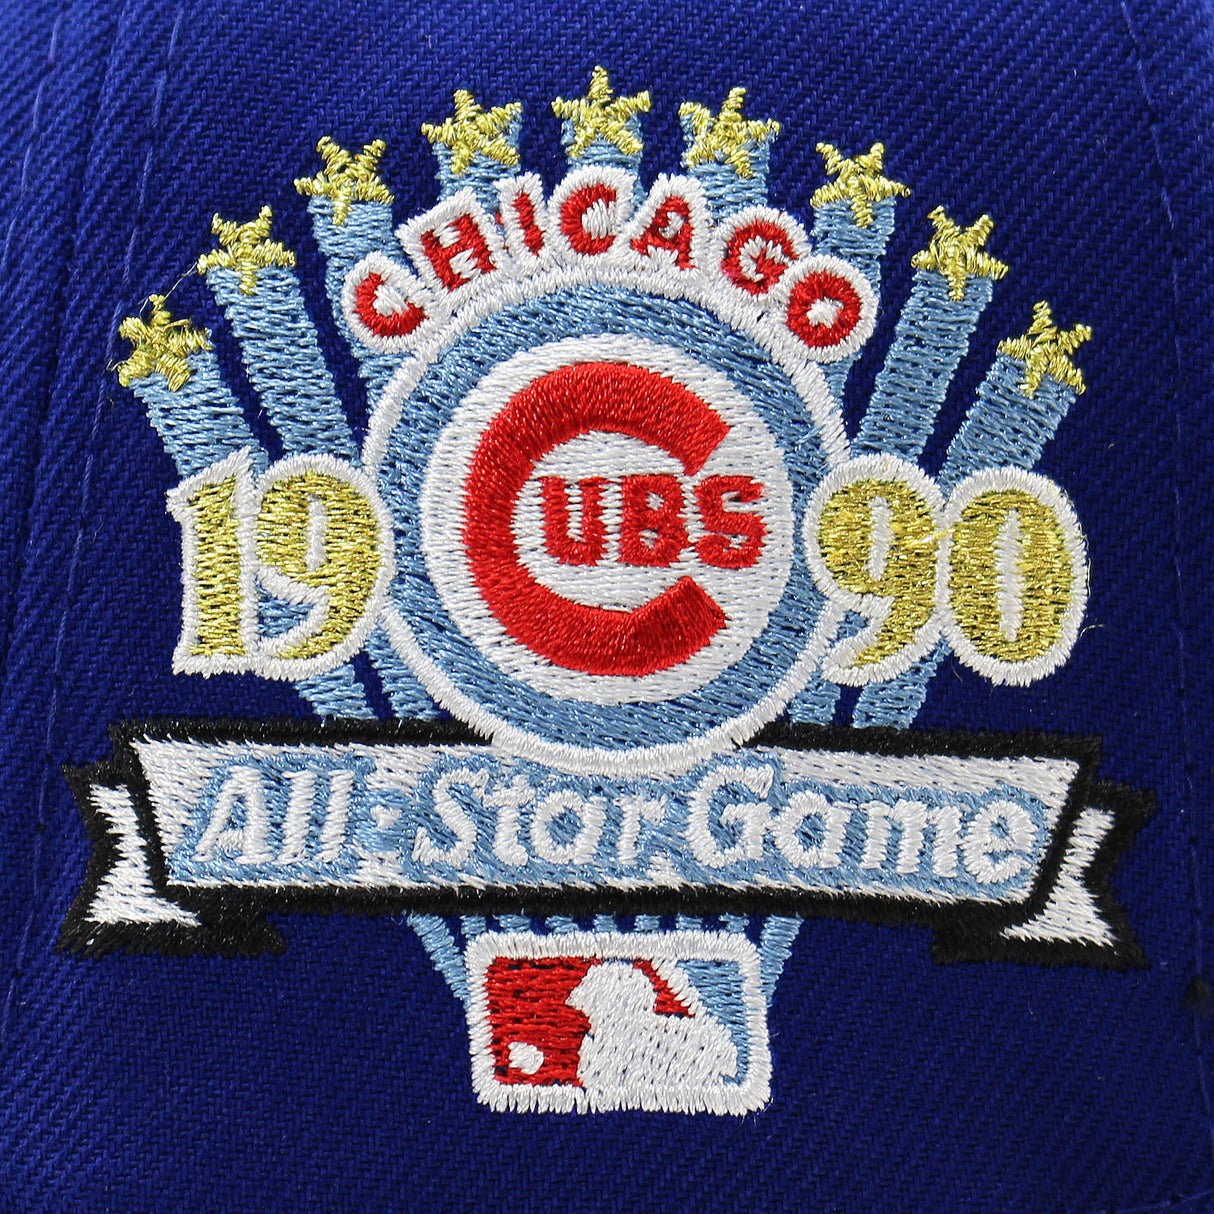 ニューエラ キャップ 59FIFTY シカゴ カブス MLB 1990 ALL STAR GAME SKY BLUE BOTTOM FITTED CAP BLUE NEW ERA CHICAGO CUBS